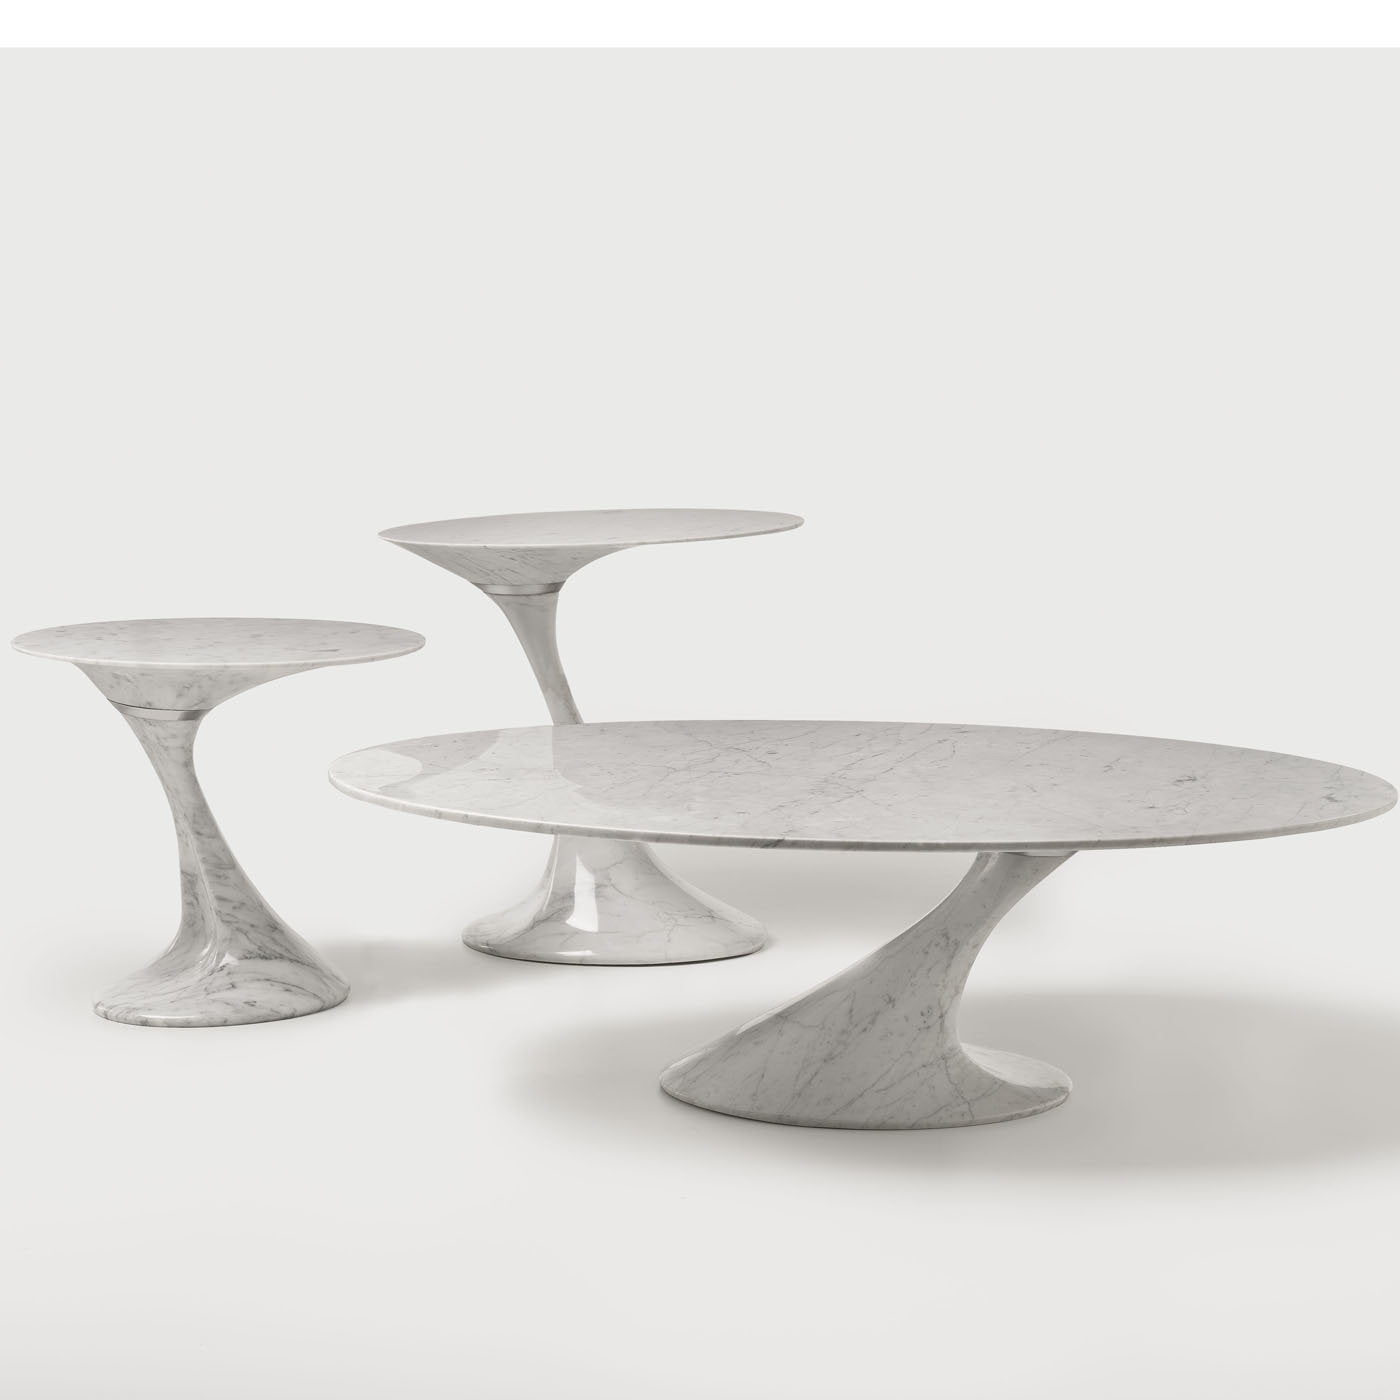 Swan Medium Oval Side Table by Giuseppe Chigiotti - Alternative view 1